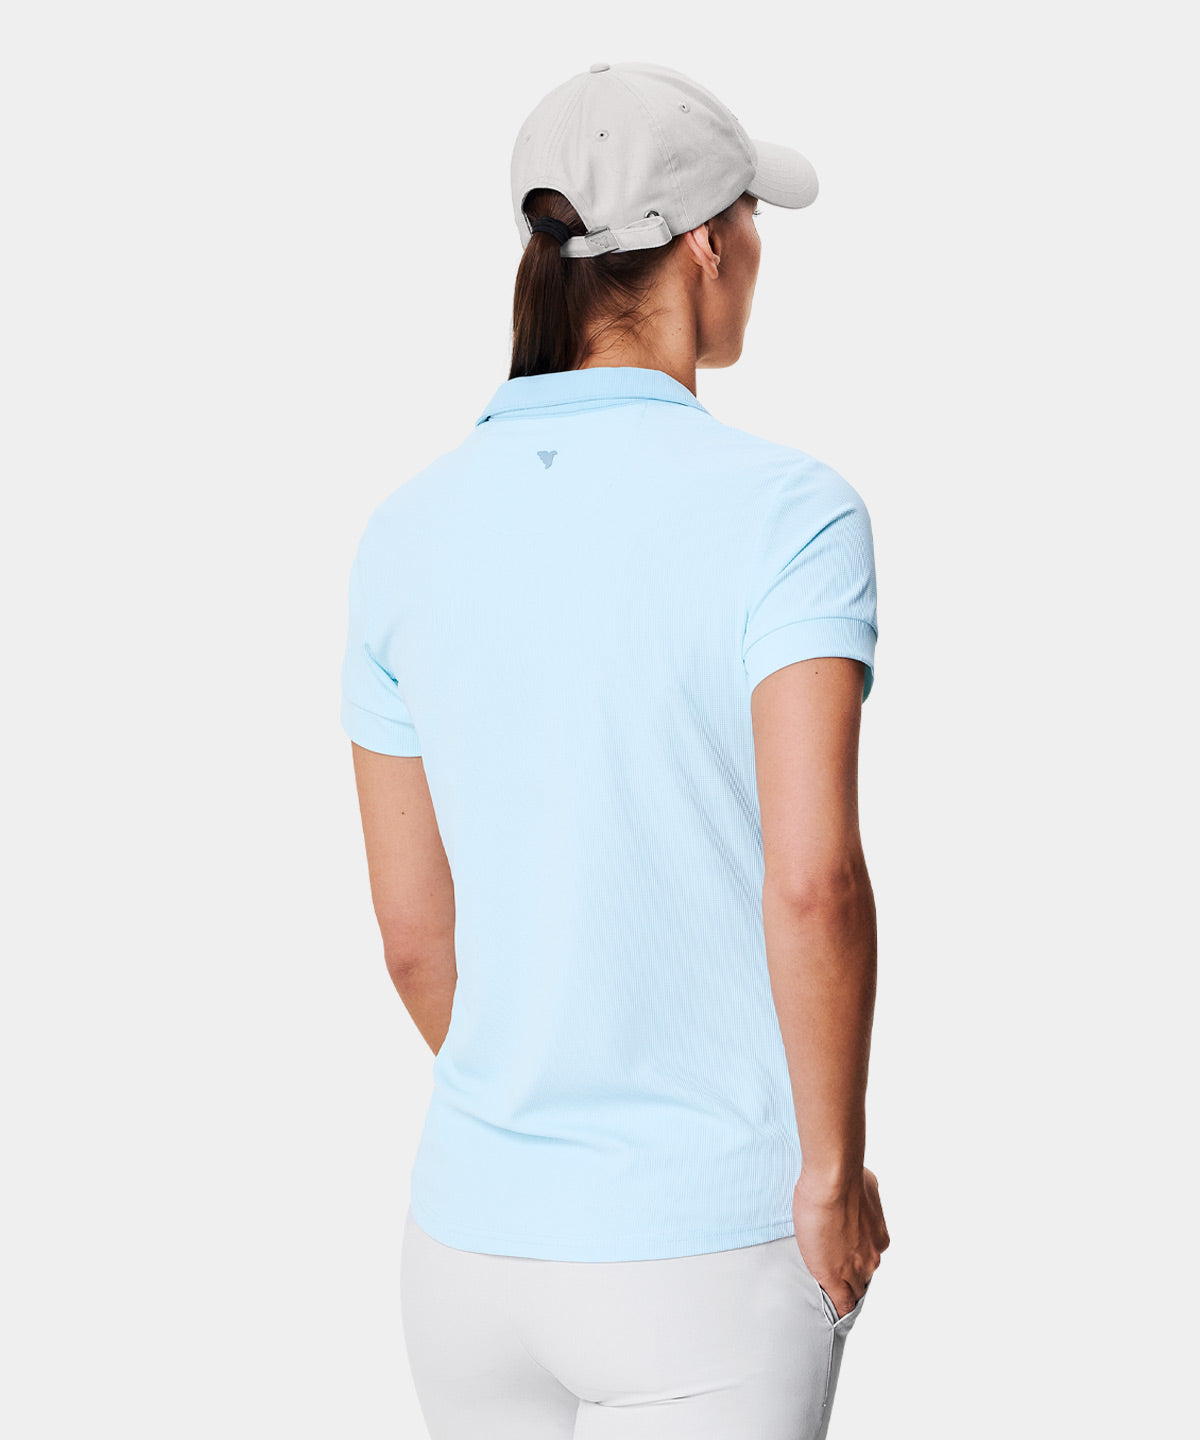 Macade Tori Shirt Polo – Blue Light